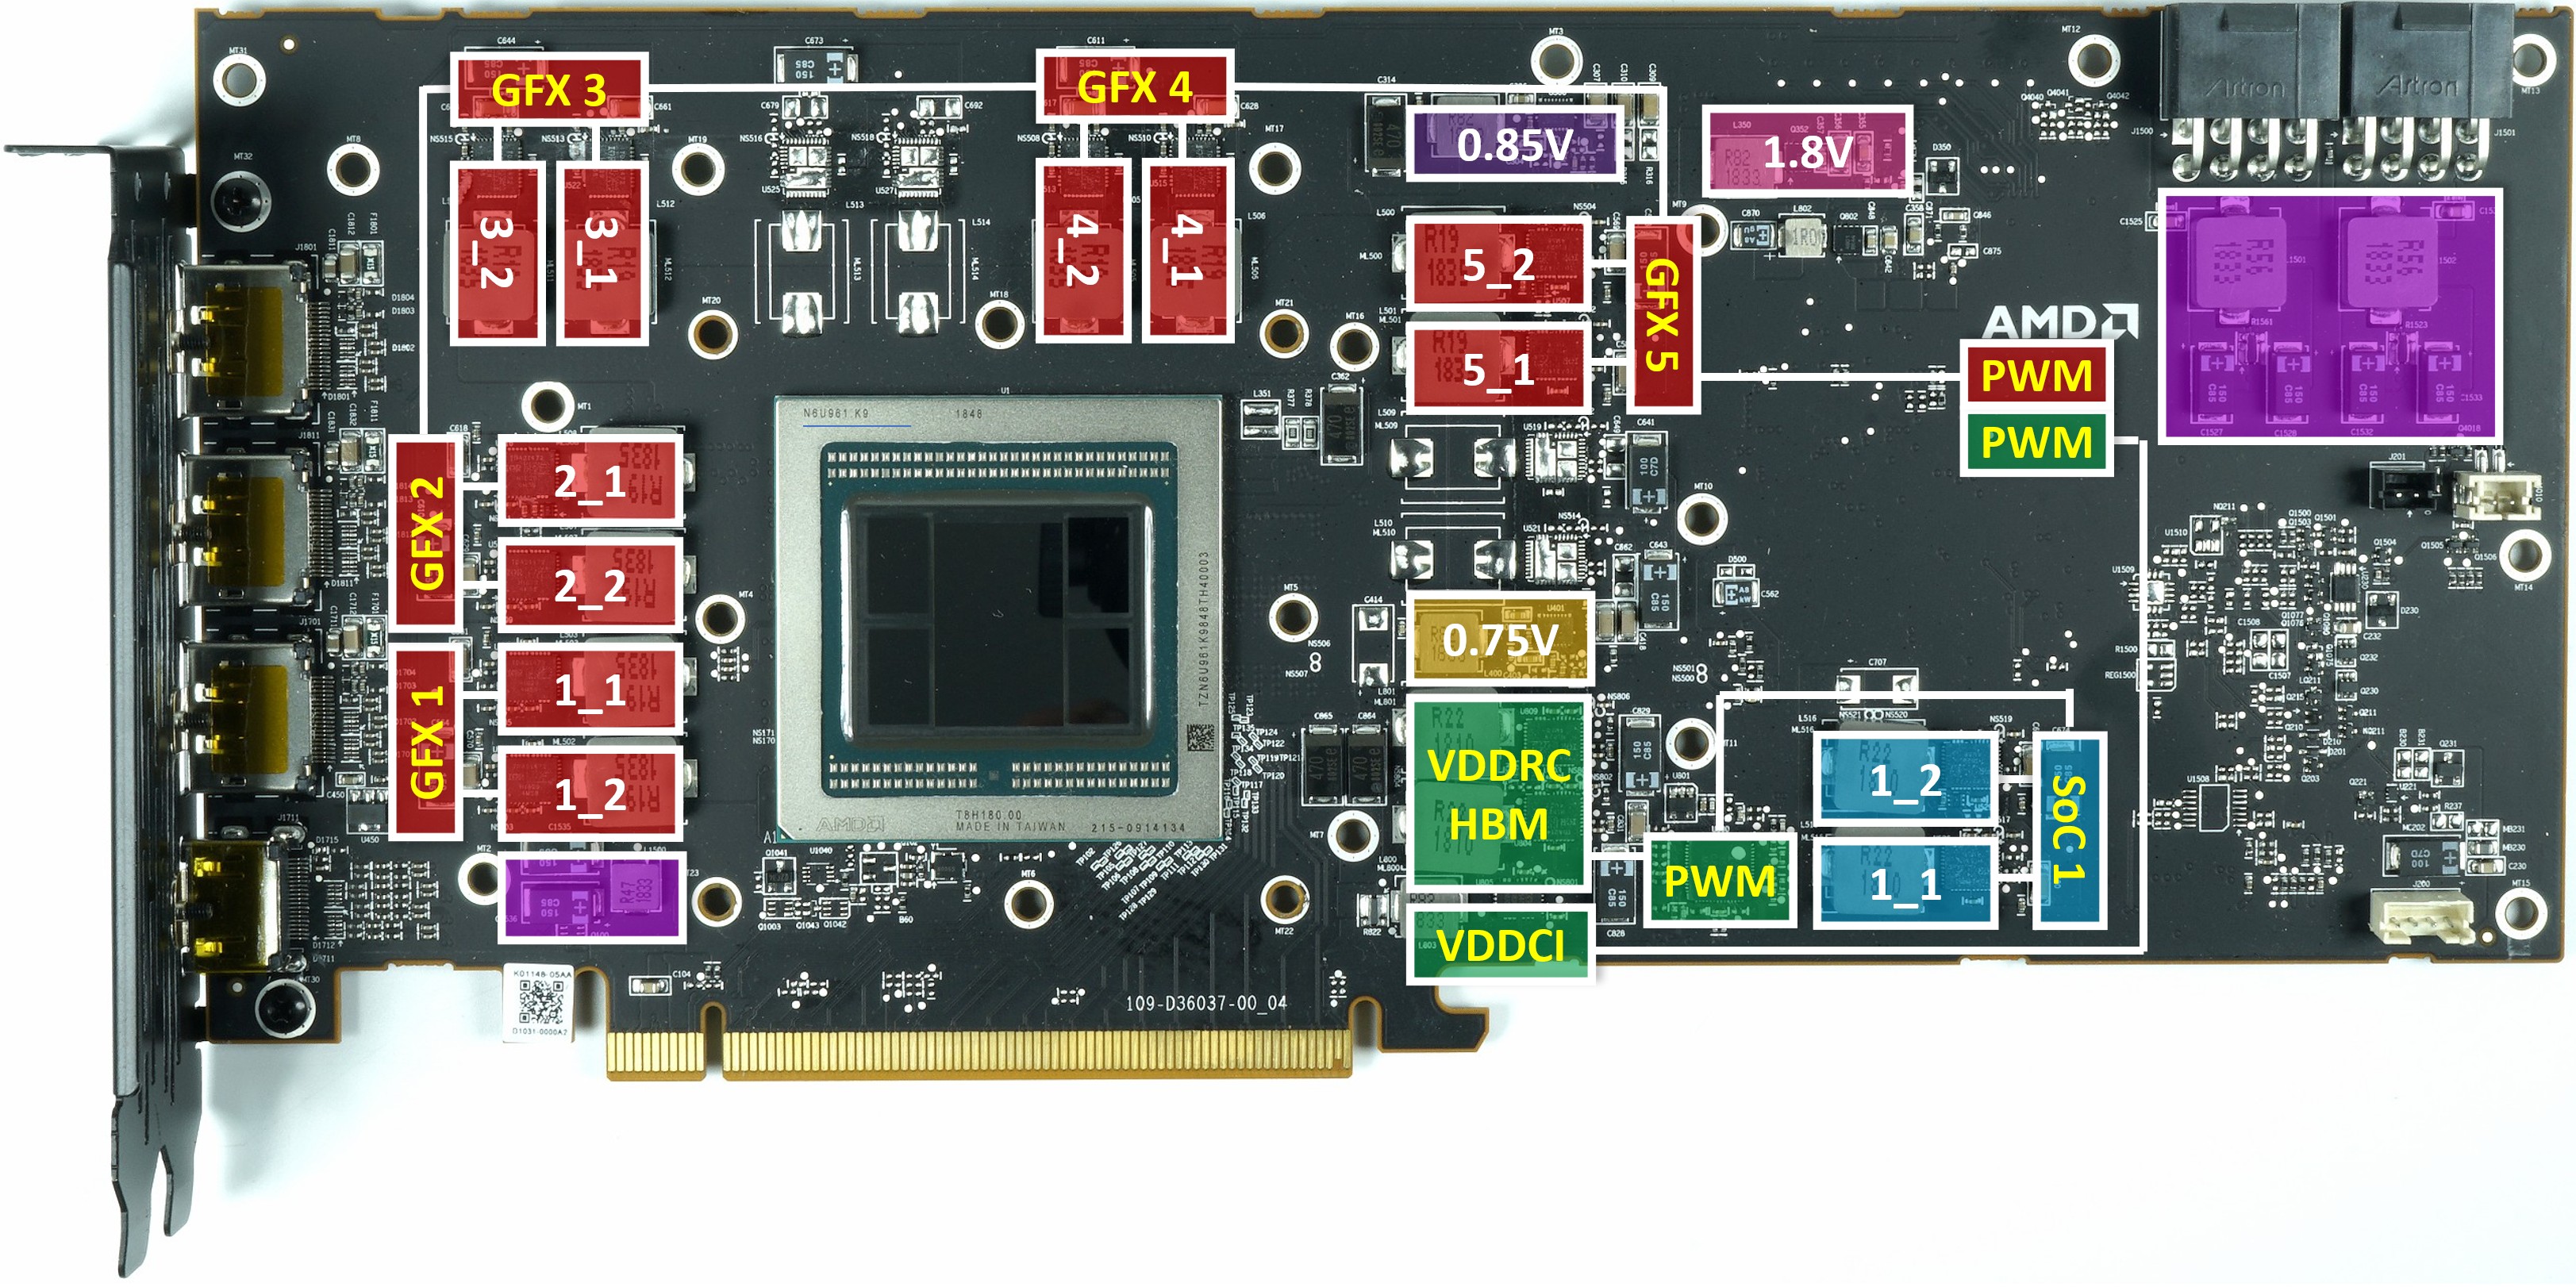 Производителя памяти видеокарты. Видеокарта AMD Radeon GTX 580. 3070 VRM видеокарты NVIDIA. AMD видеокарта чип. Видеокарта NVIDIA v027.